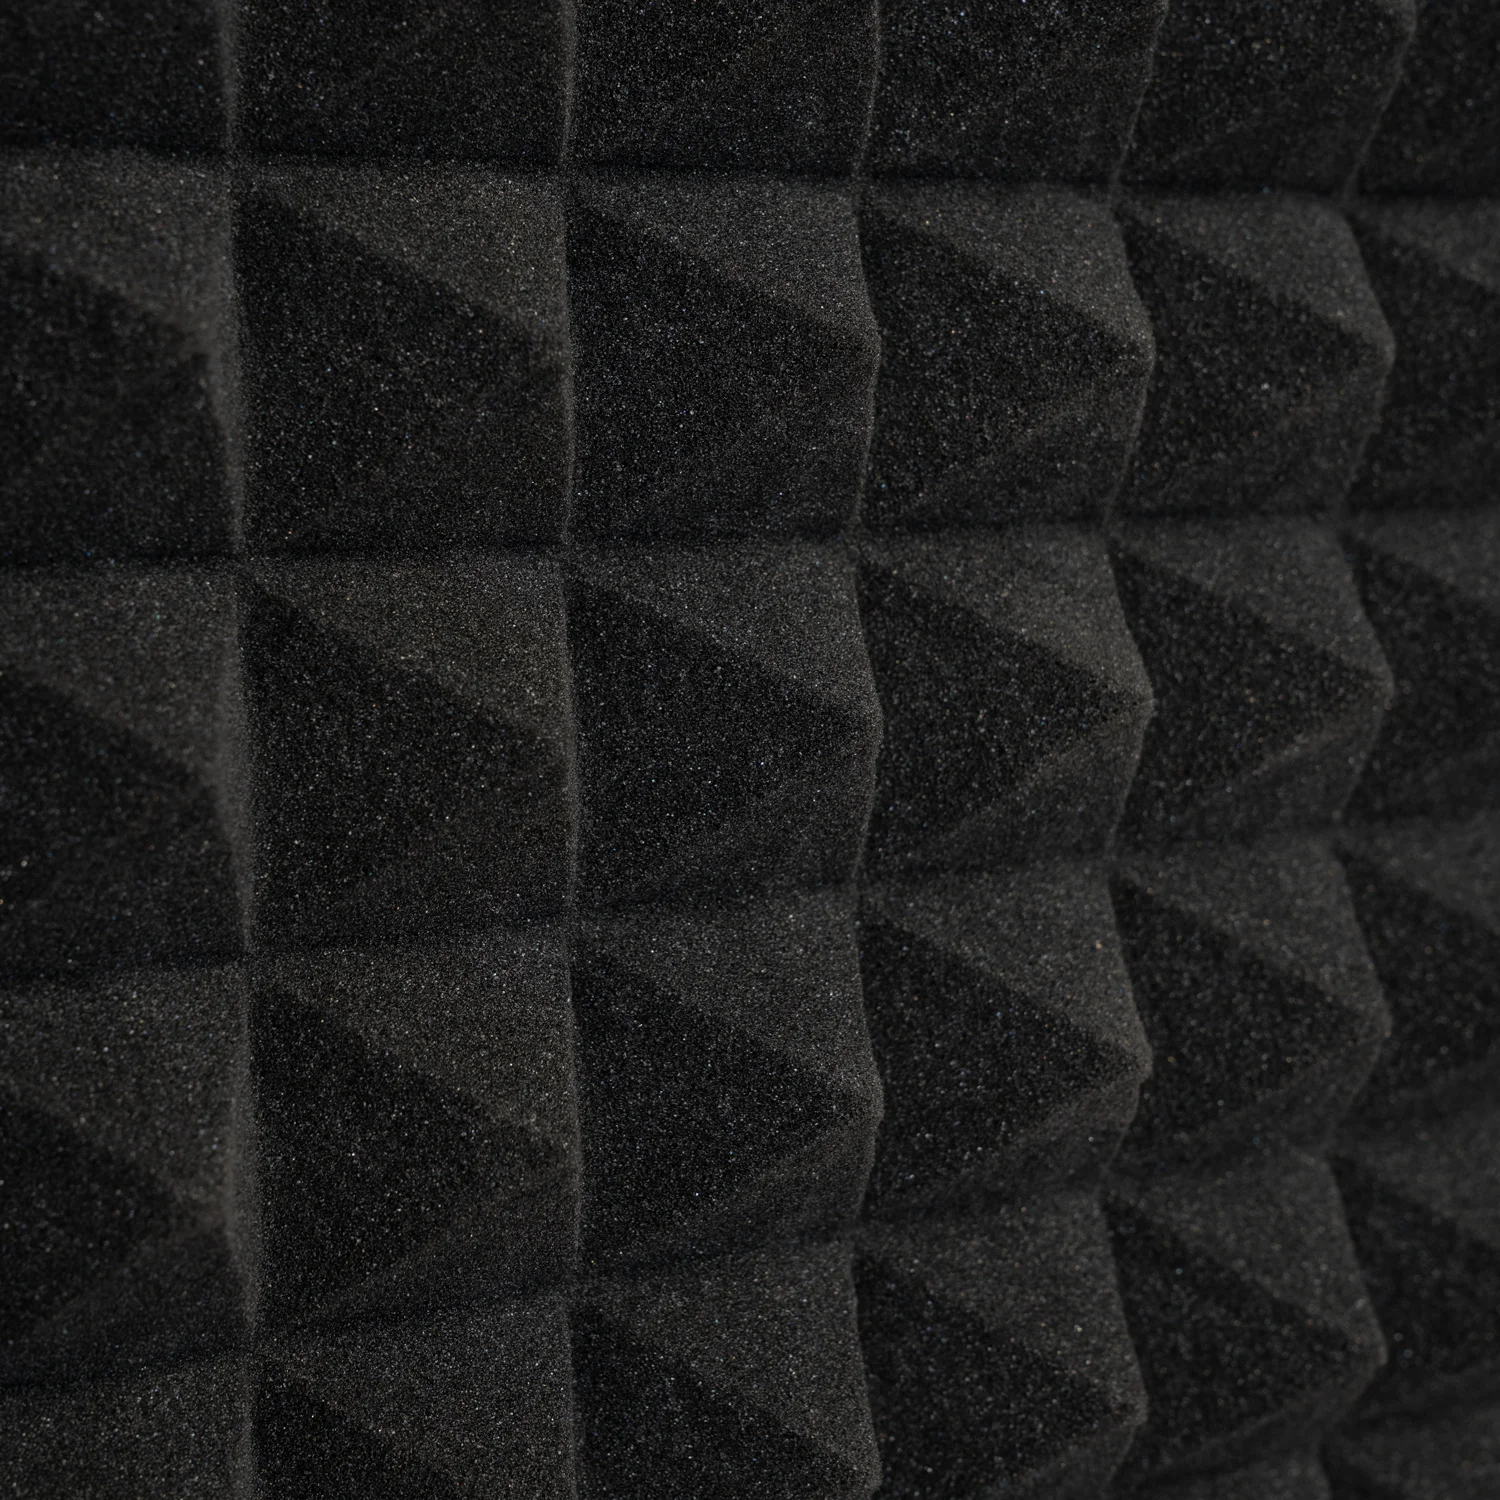 10db Hangelnyelő szivacs, 50x50cm, piramis, fekete, öntapadós